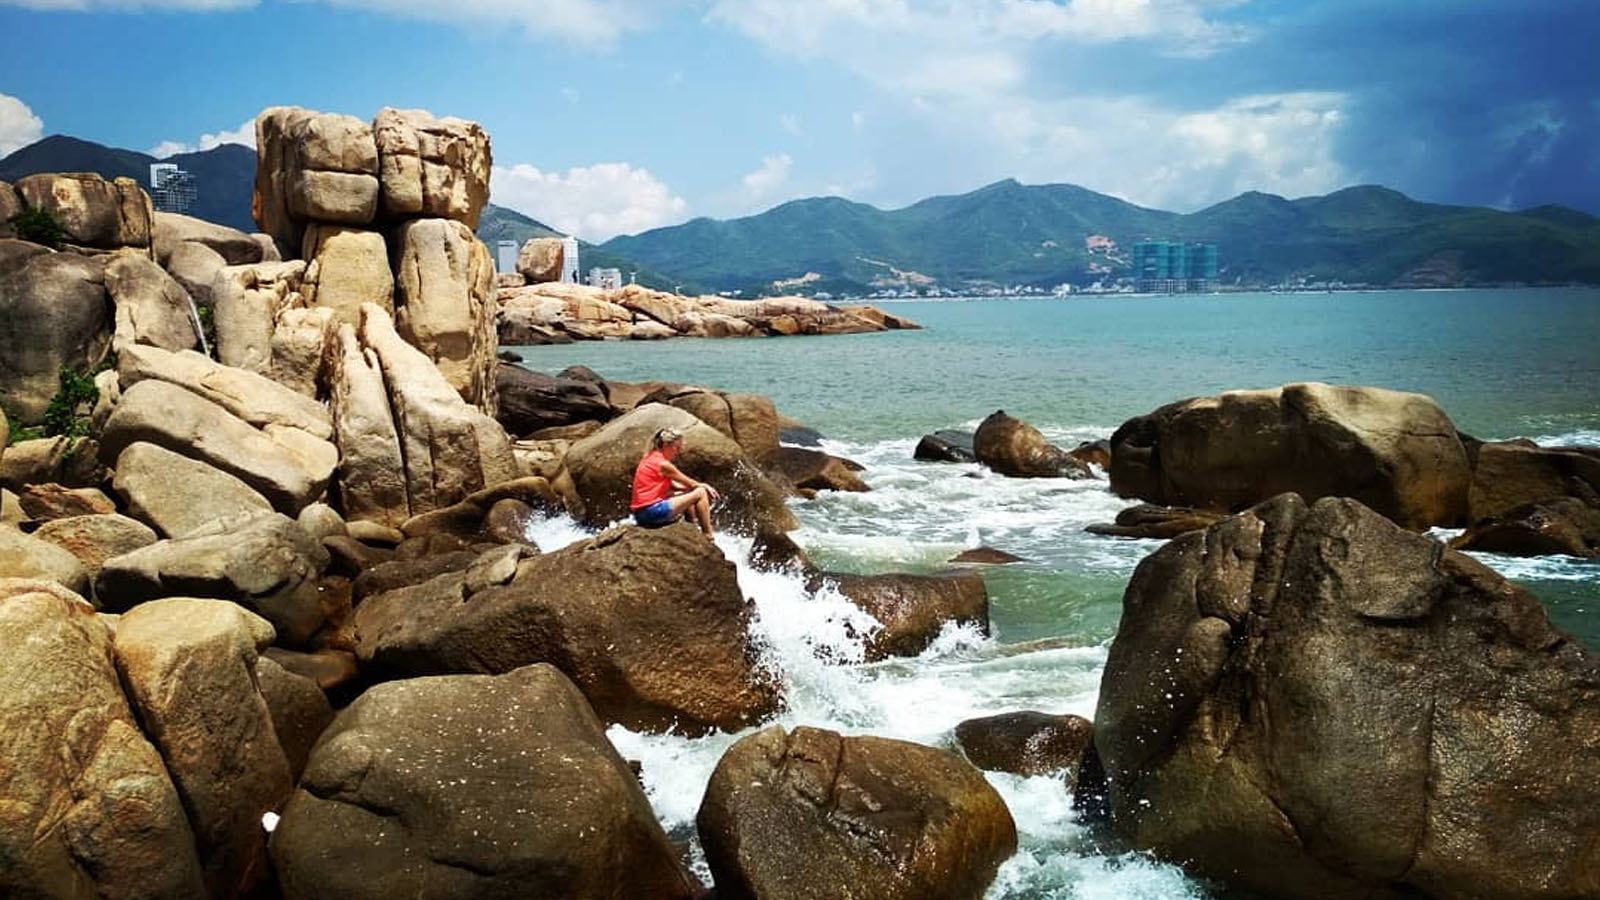 Phát hiện 2 bãi đá có tên gọi "theo cặp" ở Nha Trang, cách trung tâm chỉ 3km: Nhiều chuyện ly kỳ đằng sau- Ảnh 9.